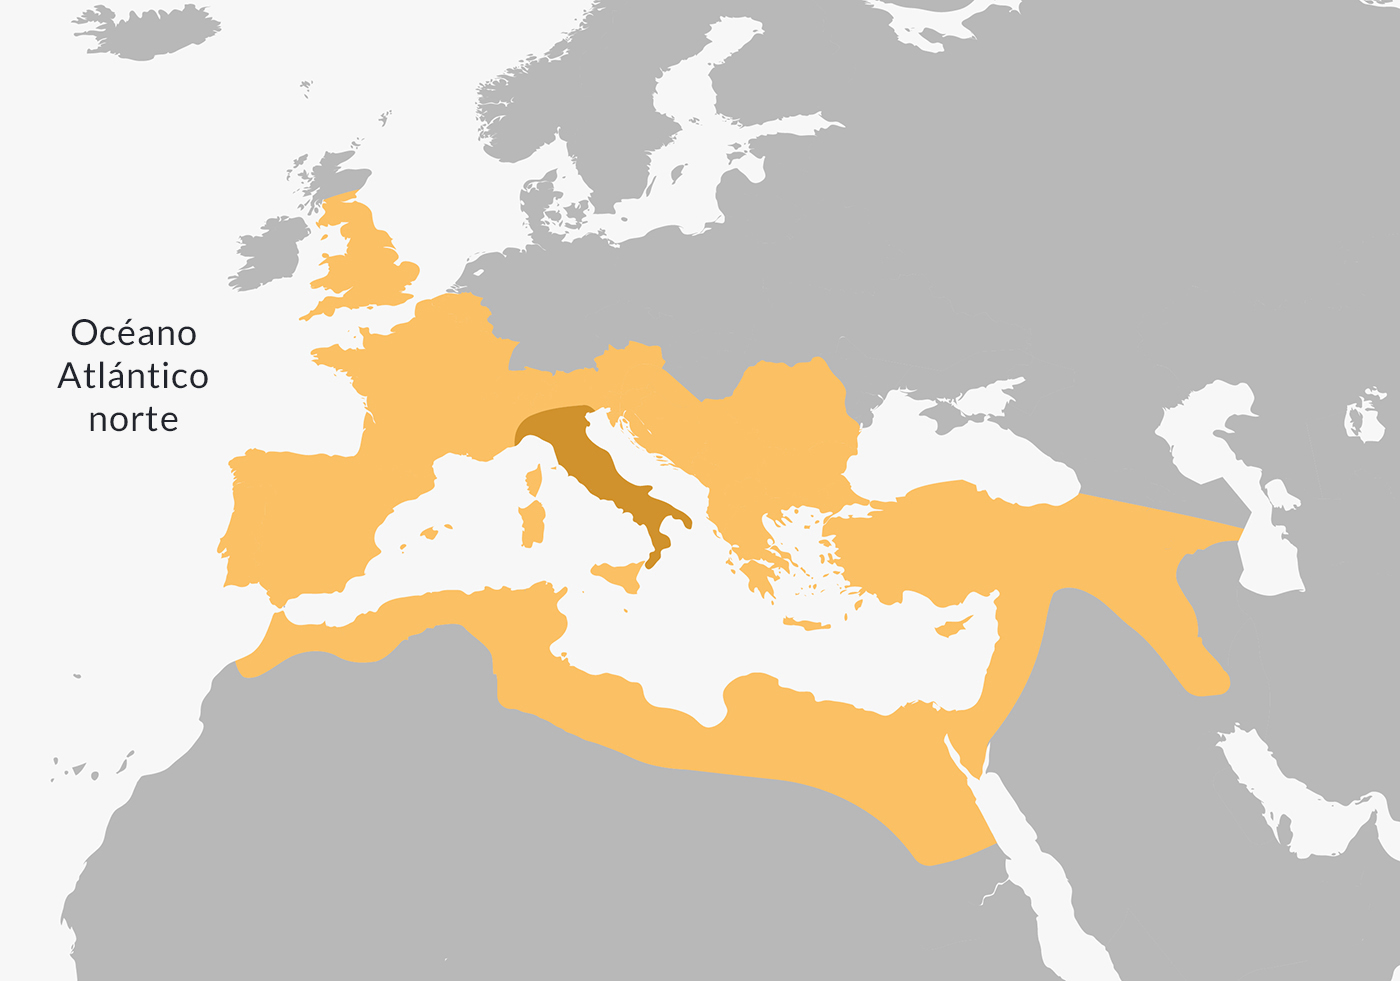 Extensión de la civilización romana en el momento de su máxima expansión, aproximadamente en el año 117.